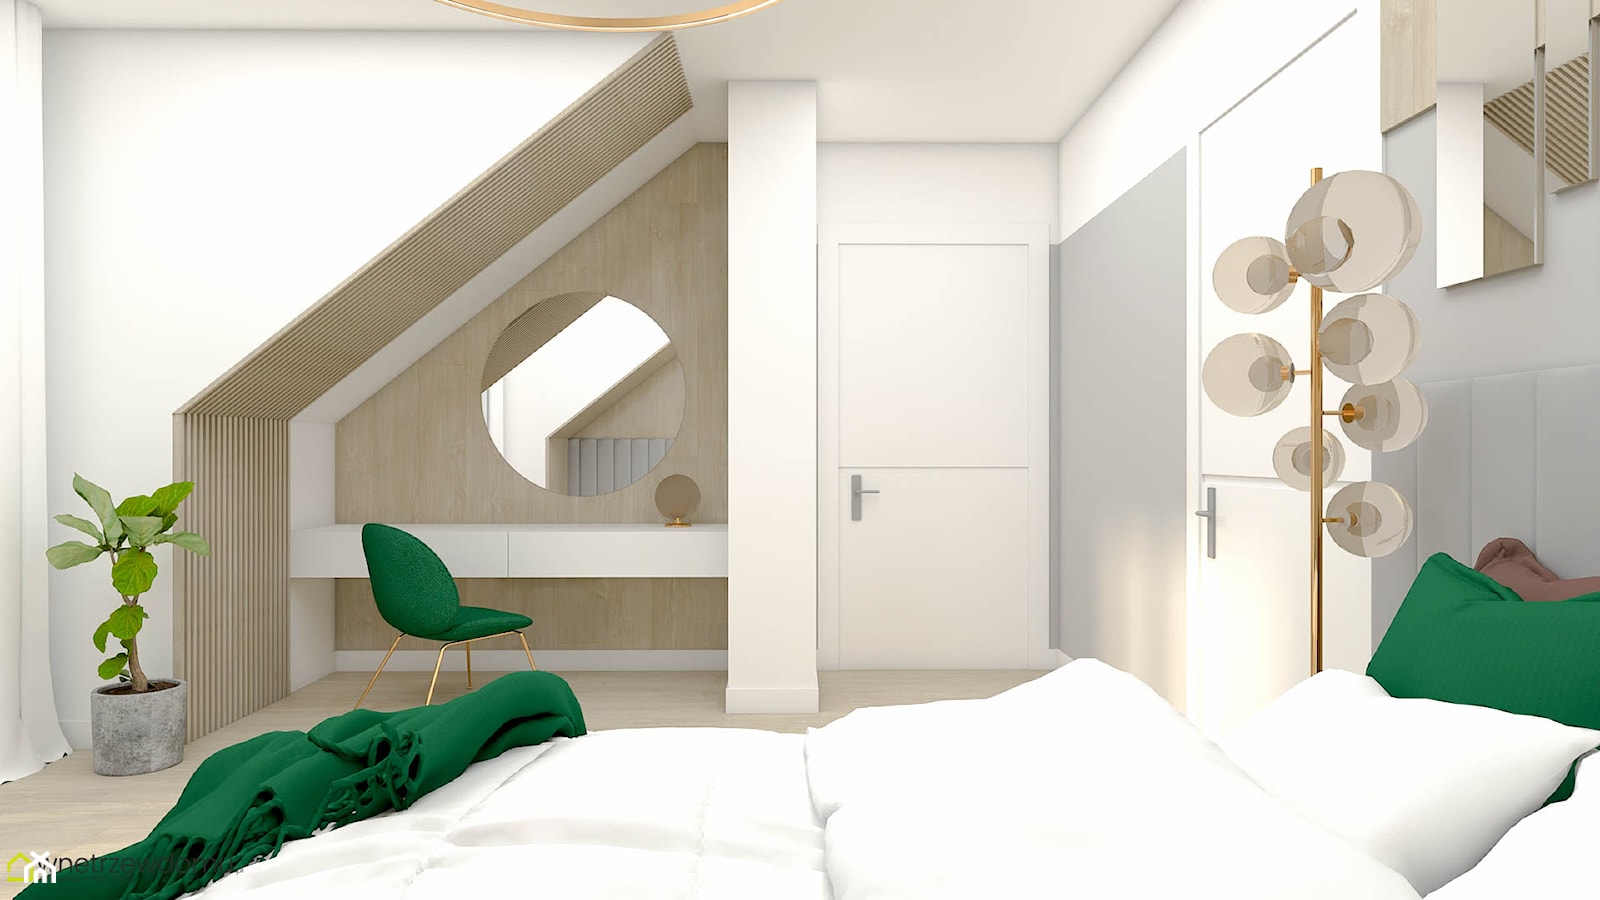 Sypialnia z ozdobnymi lamelami i toaletką - zdjęcie od wnetrzewdomu - Homebook